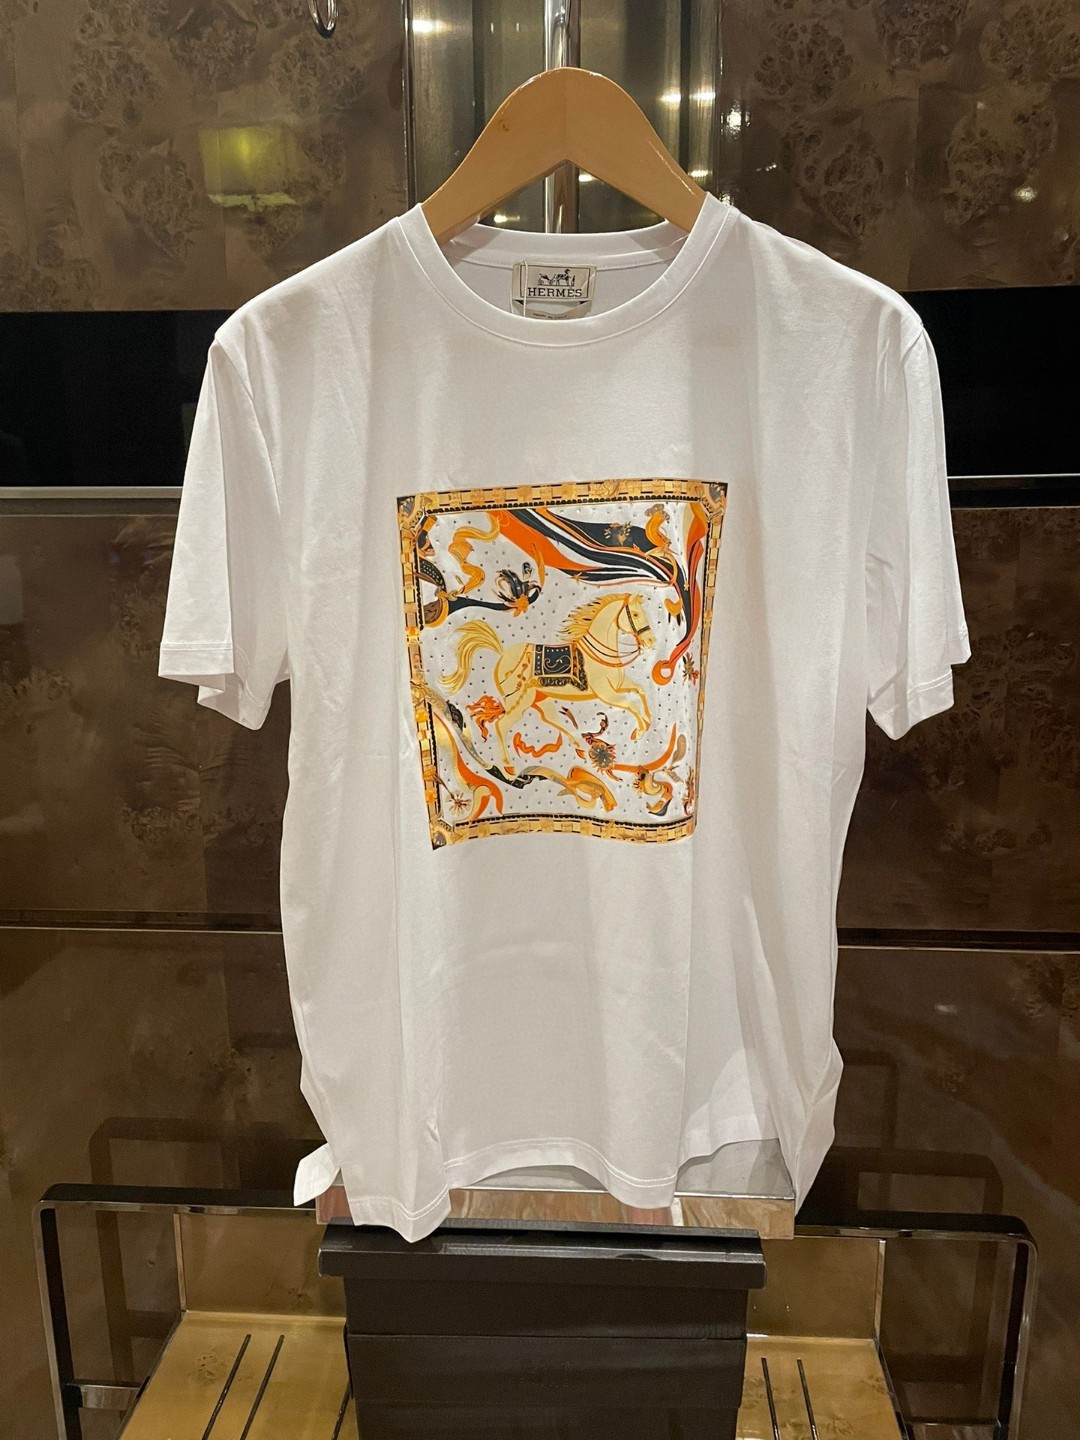 Hermes Vêtements T-Shirt Noir Blanc Hommes Coton mercerisé Fashion Manches courtes